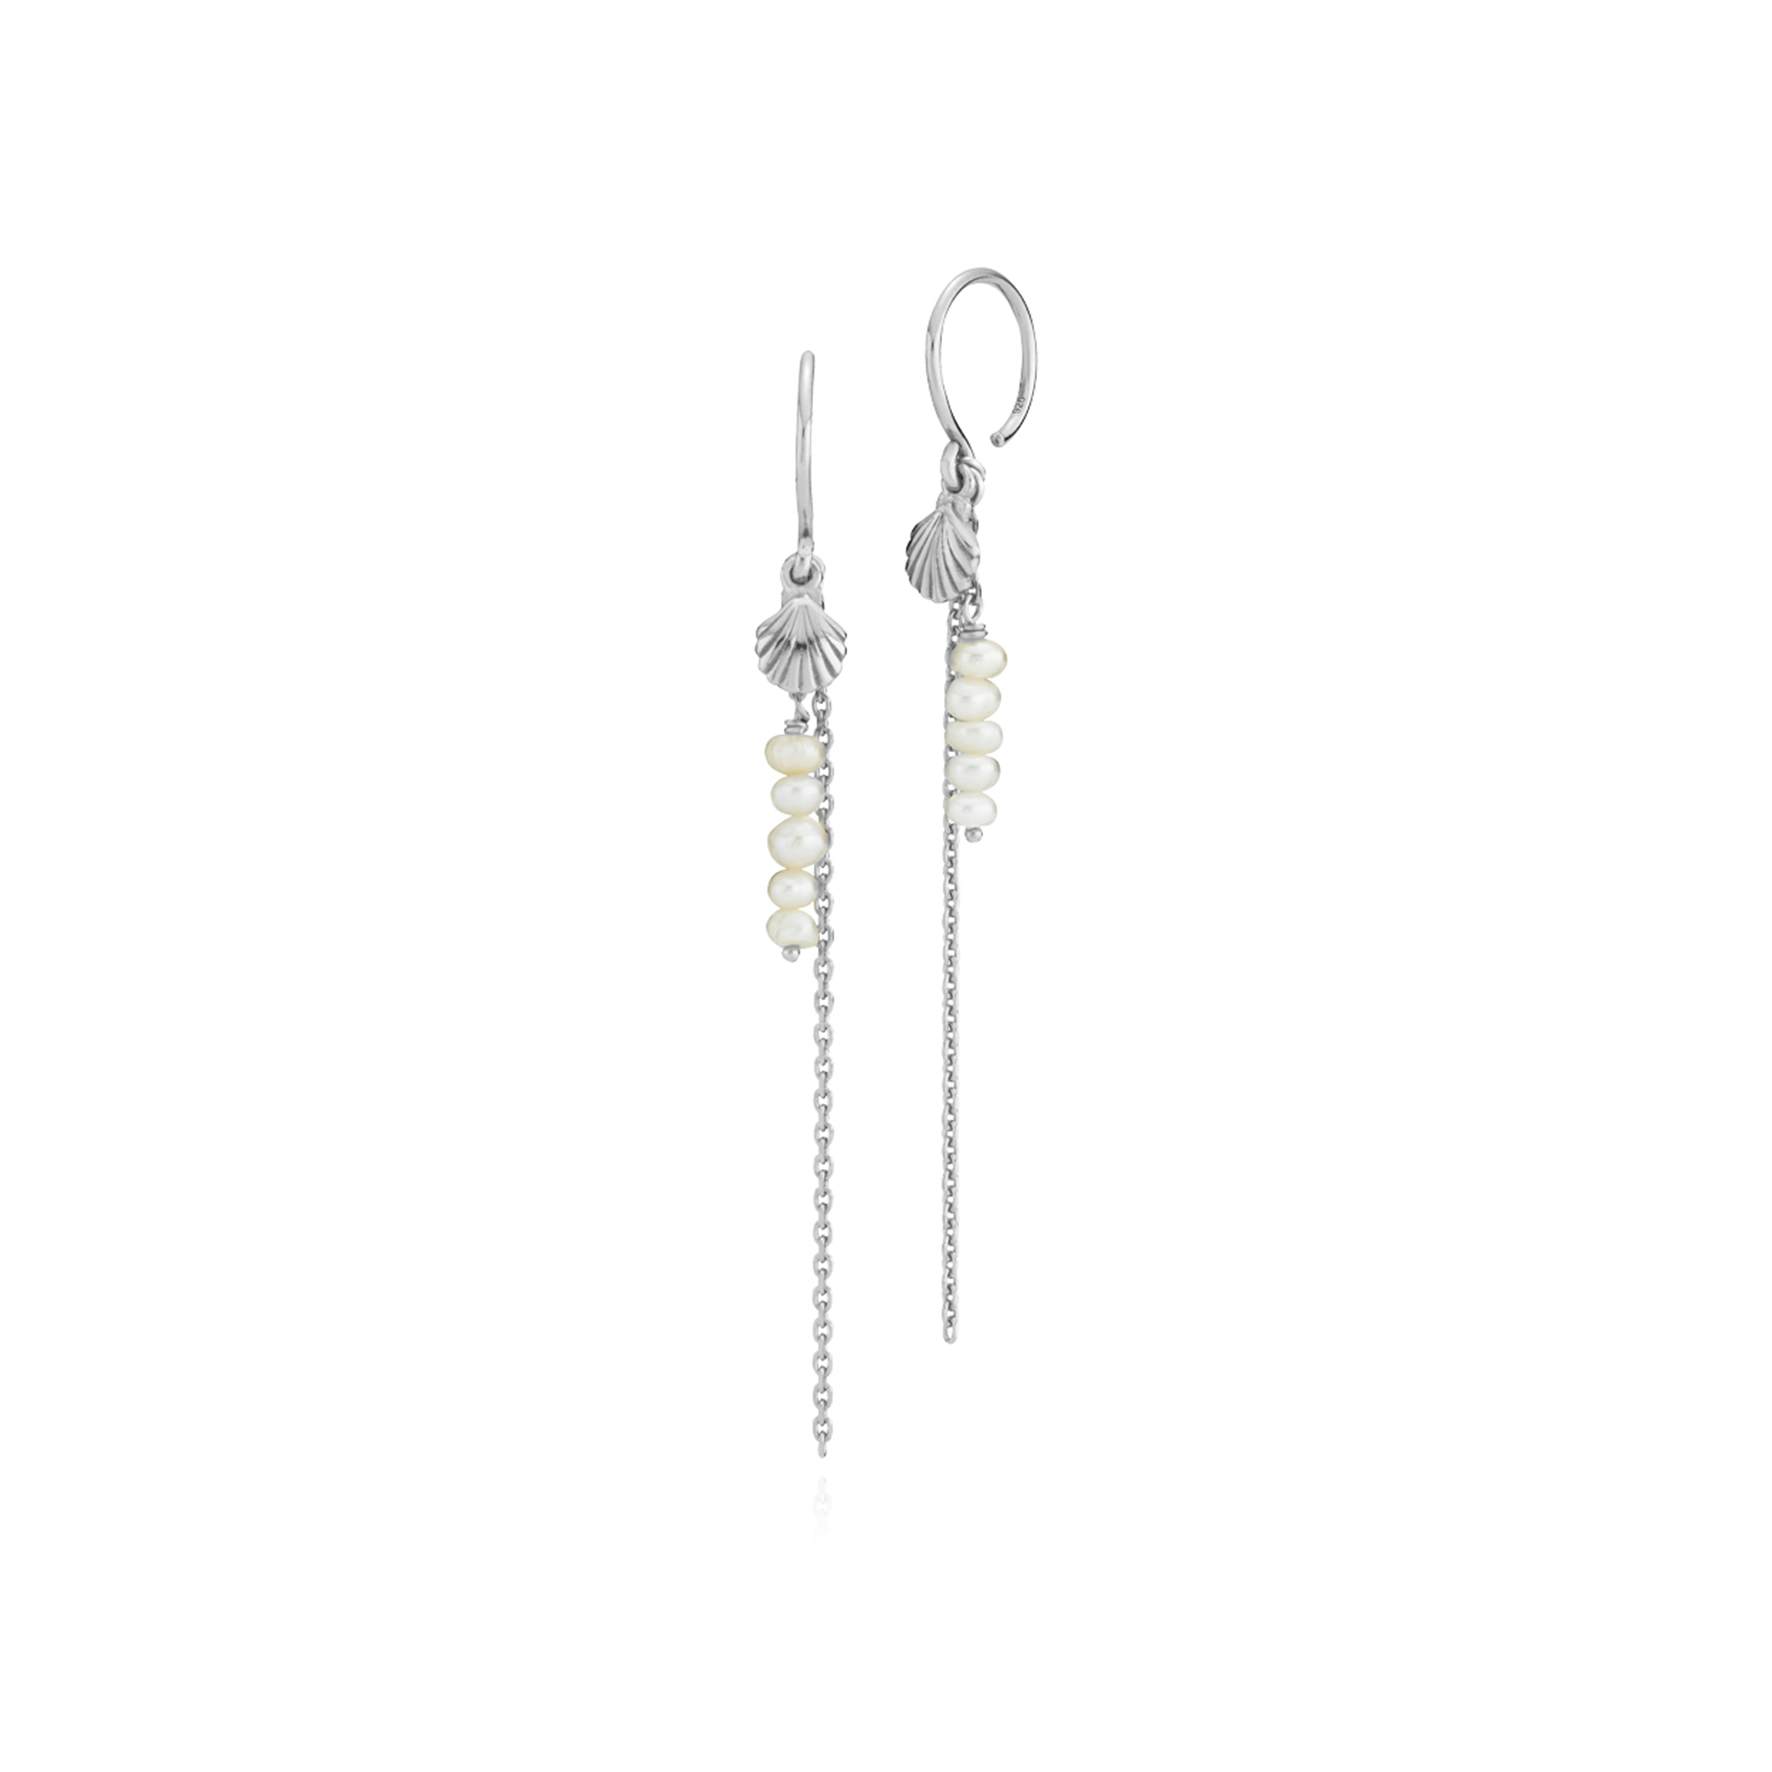 Beach Seashell Earrings from Sistie in Silver Sterling 925